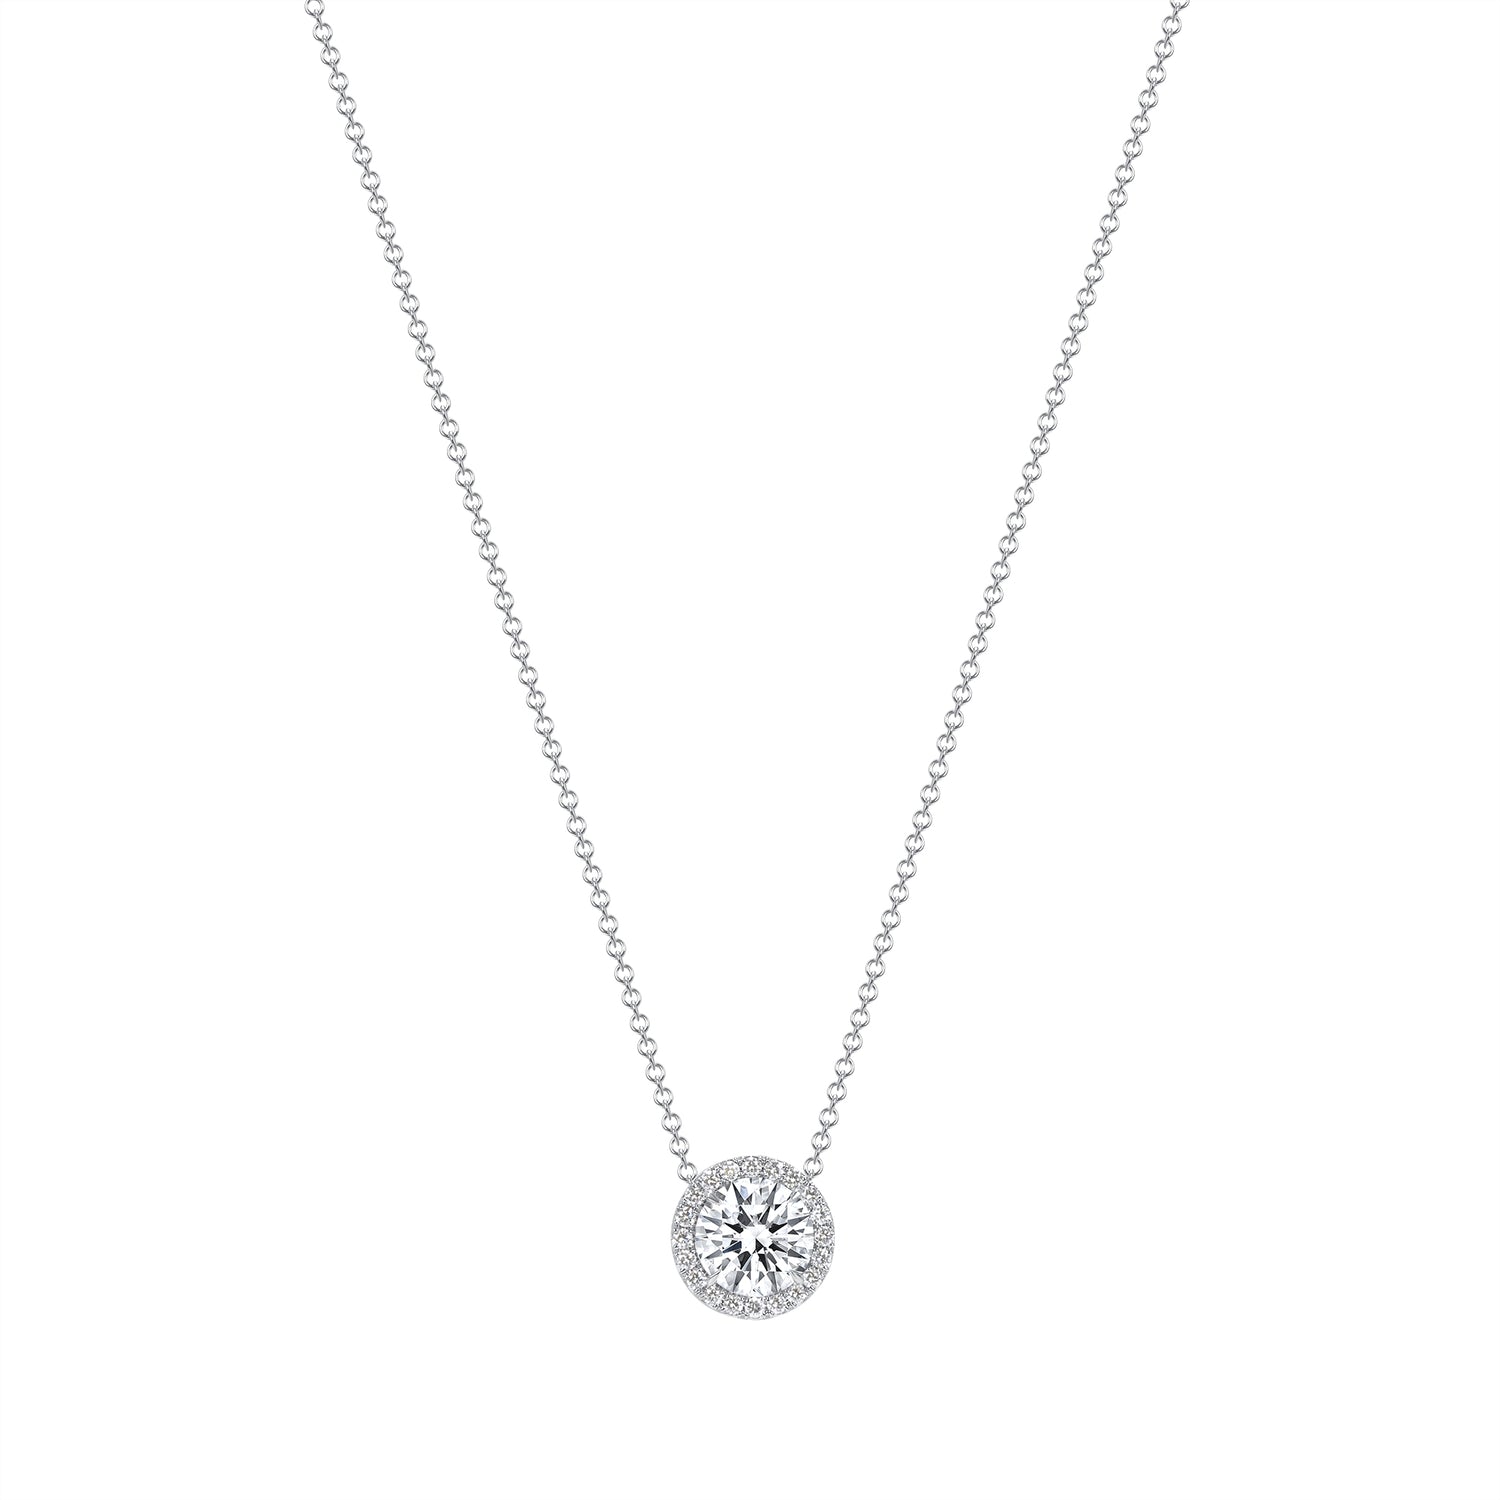 2.92 CT. Halo Round Brilliant Diamond Pendant Necklace in 14K White Gold